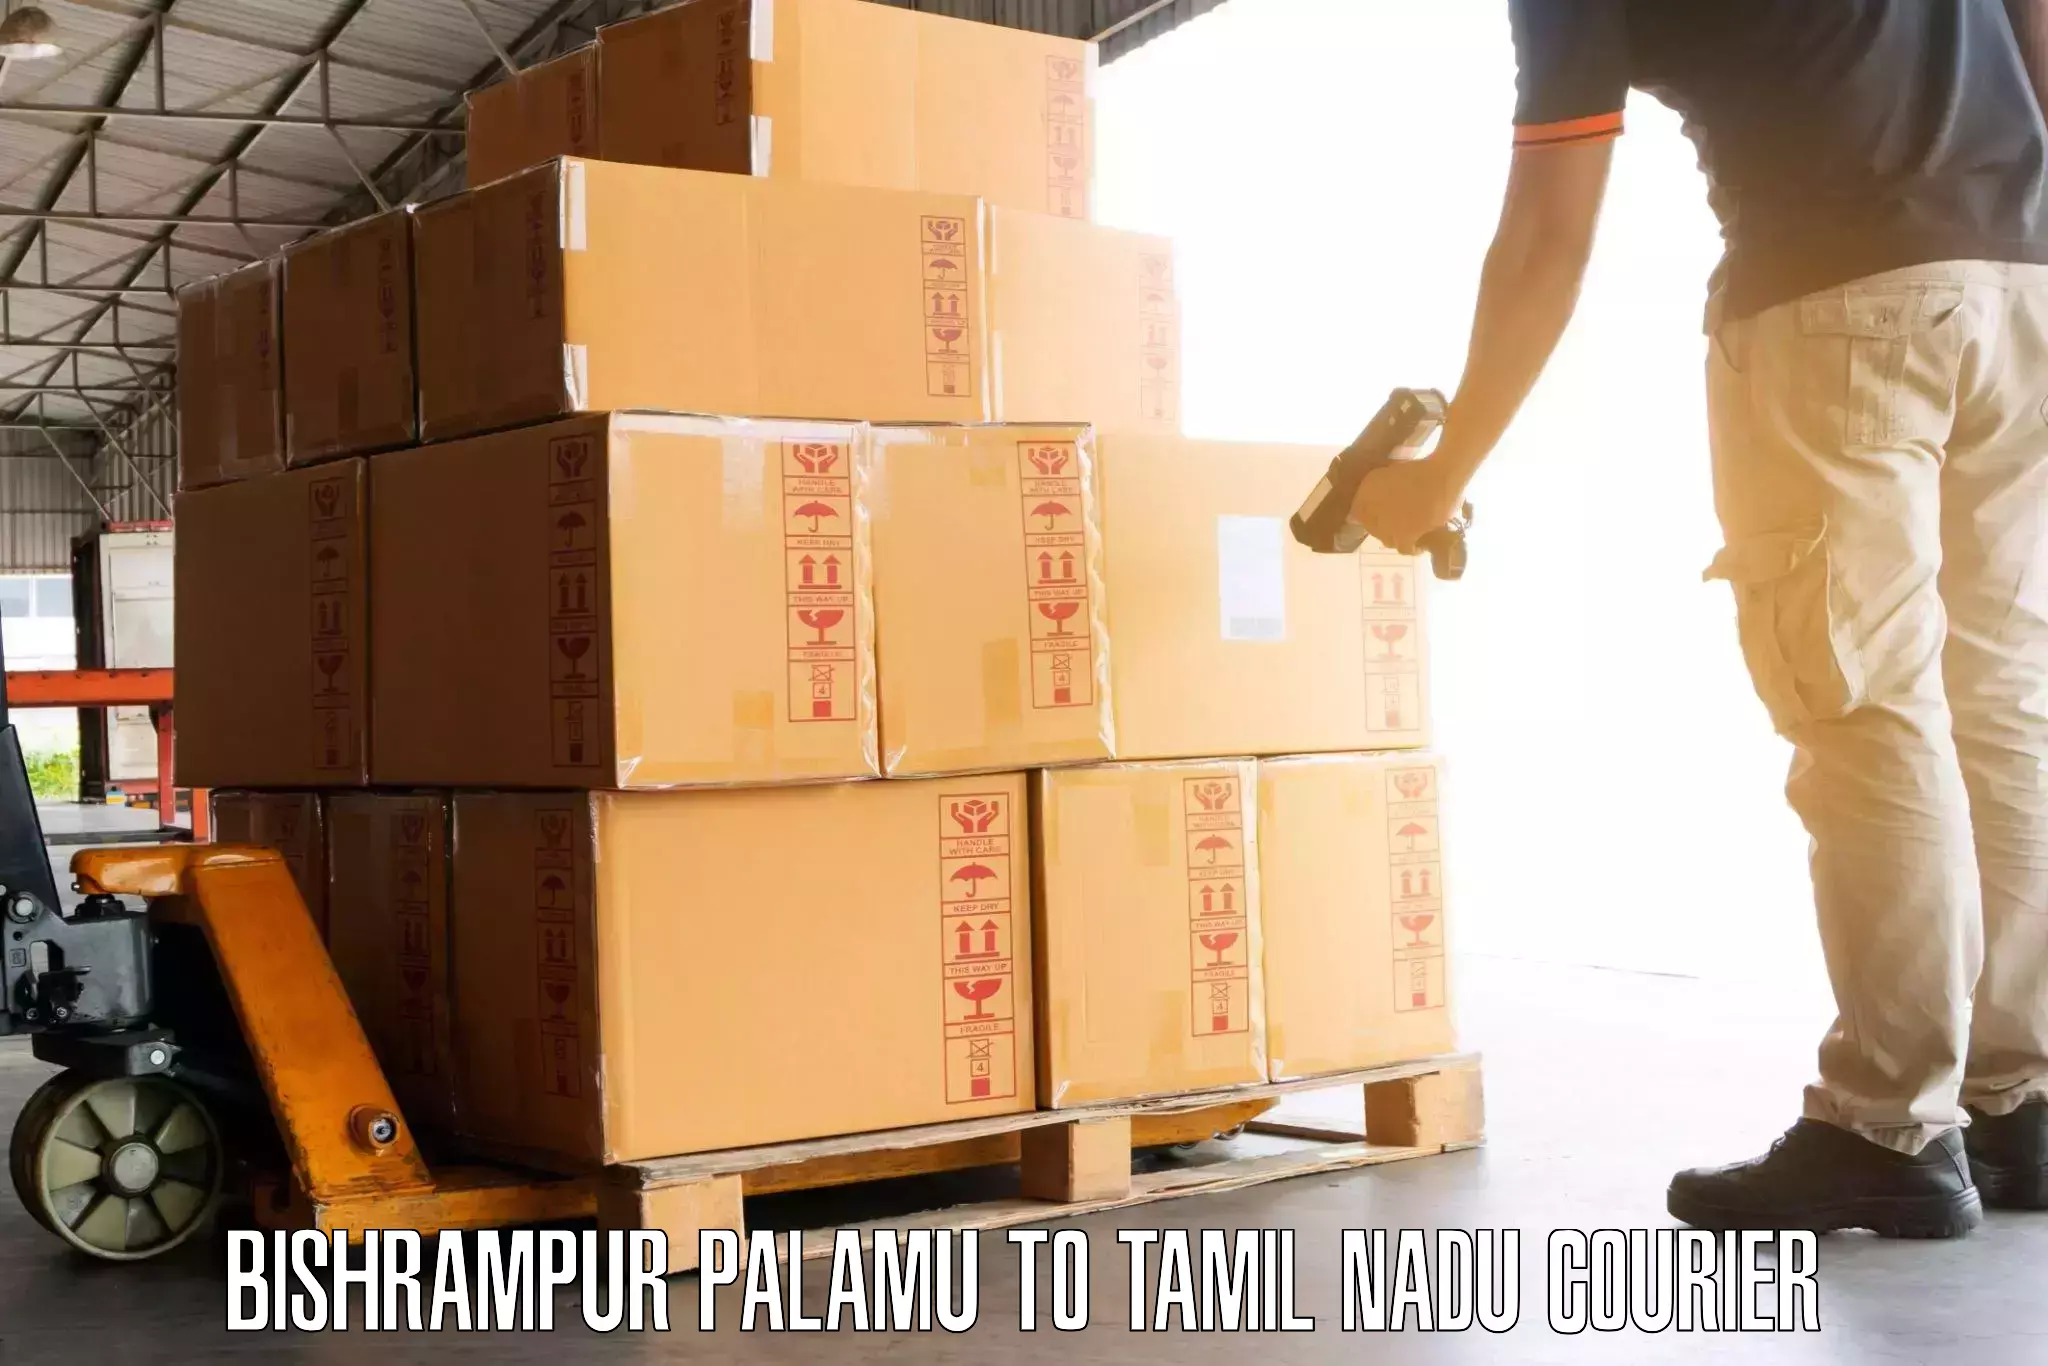 Luggage delivery calculator Bishrampur Palamu to Peralam